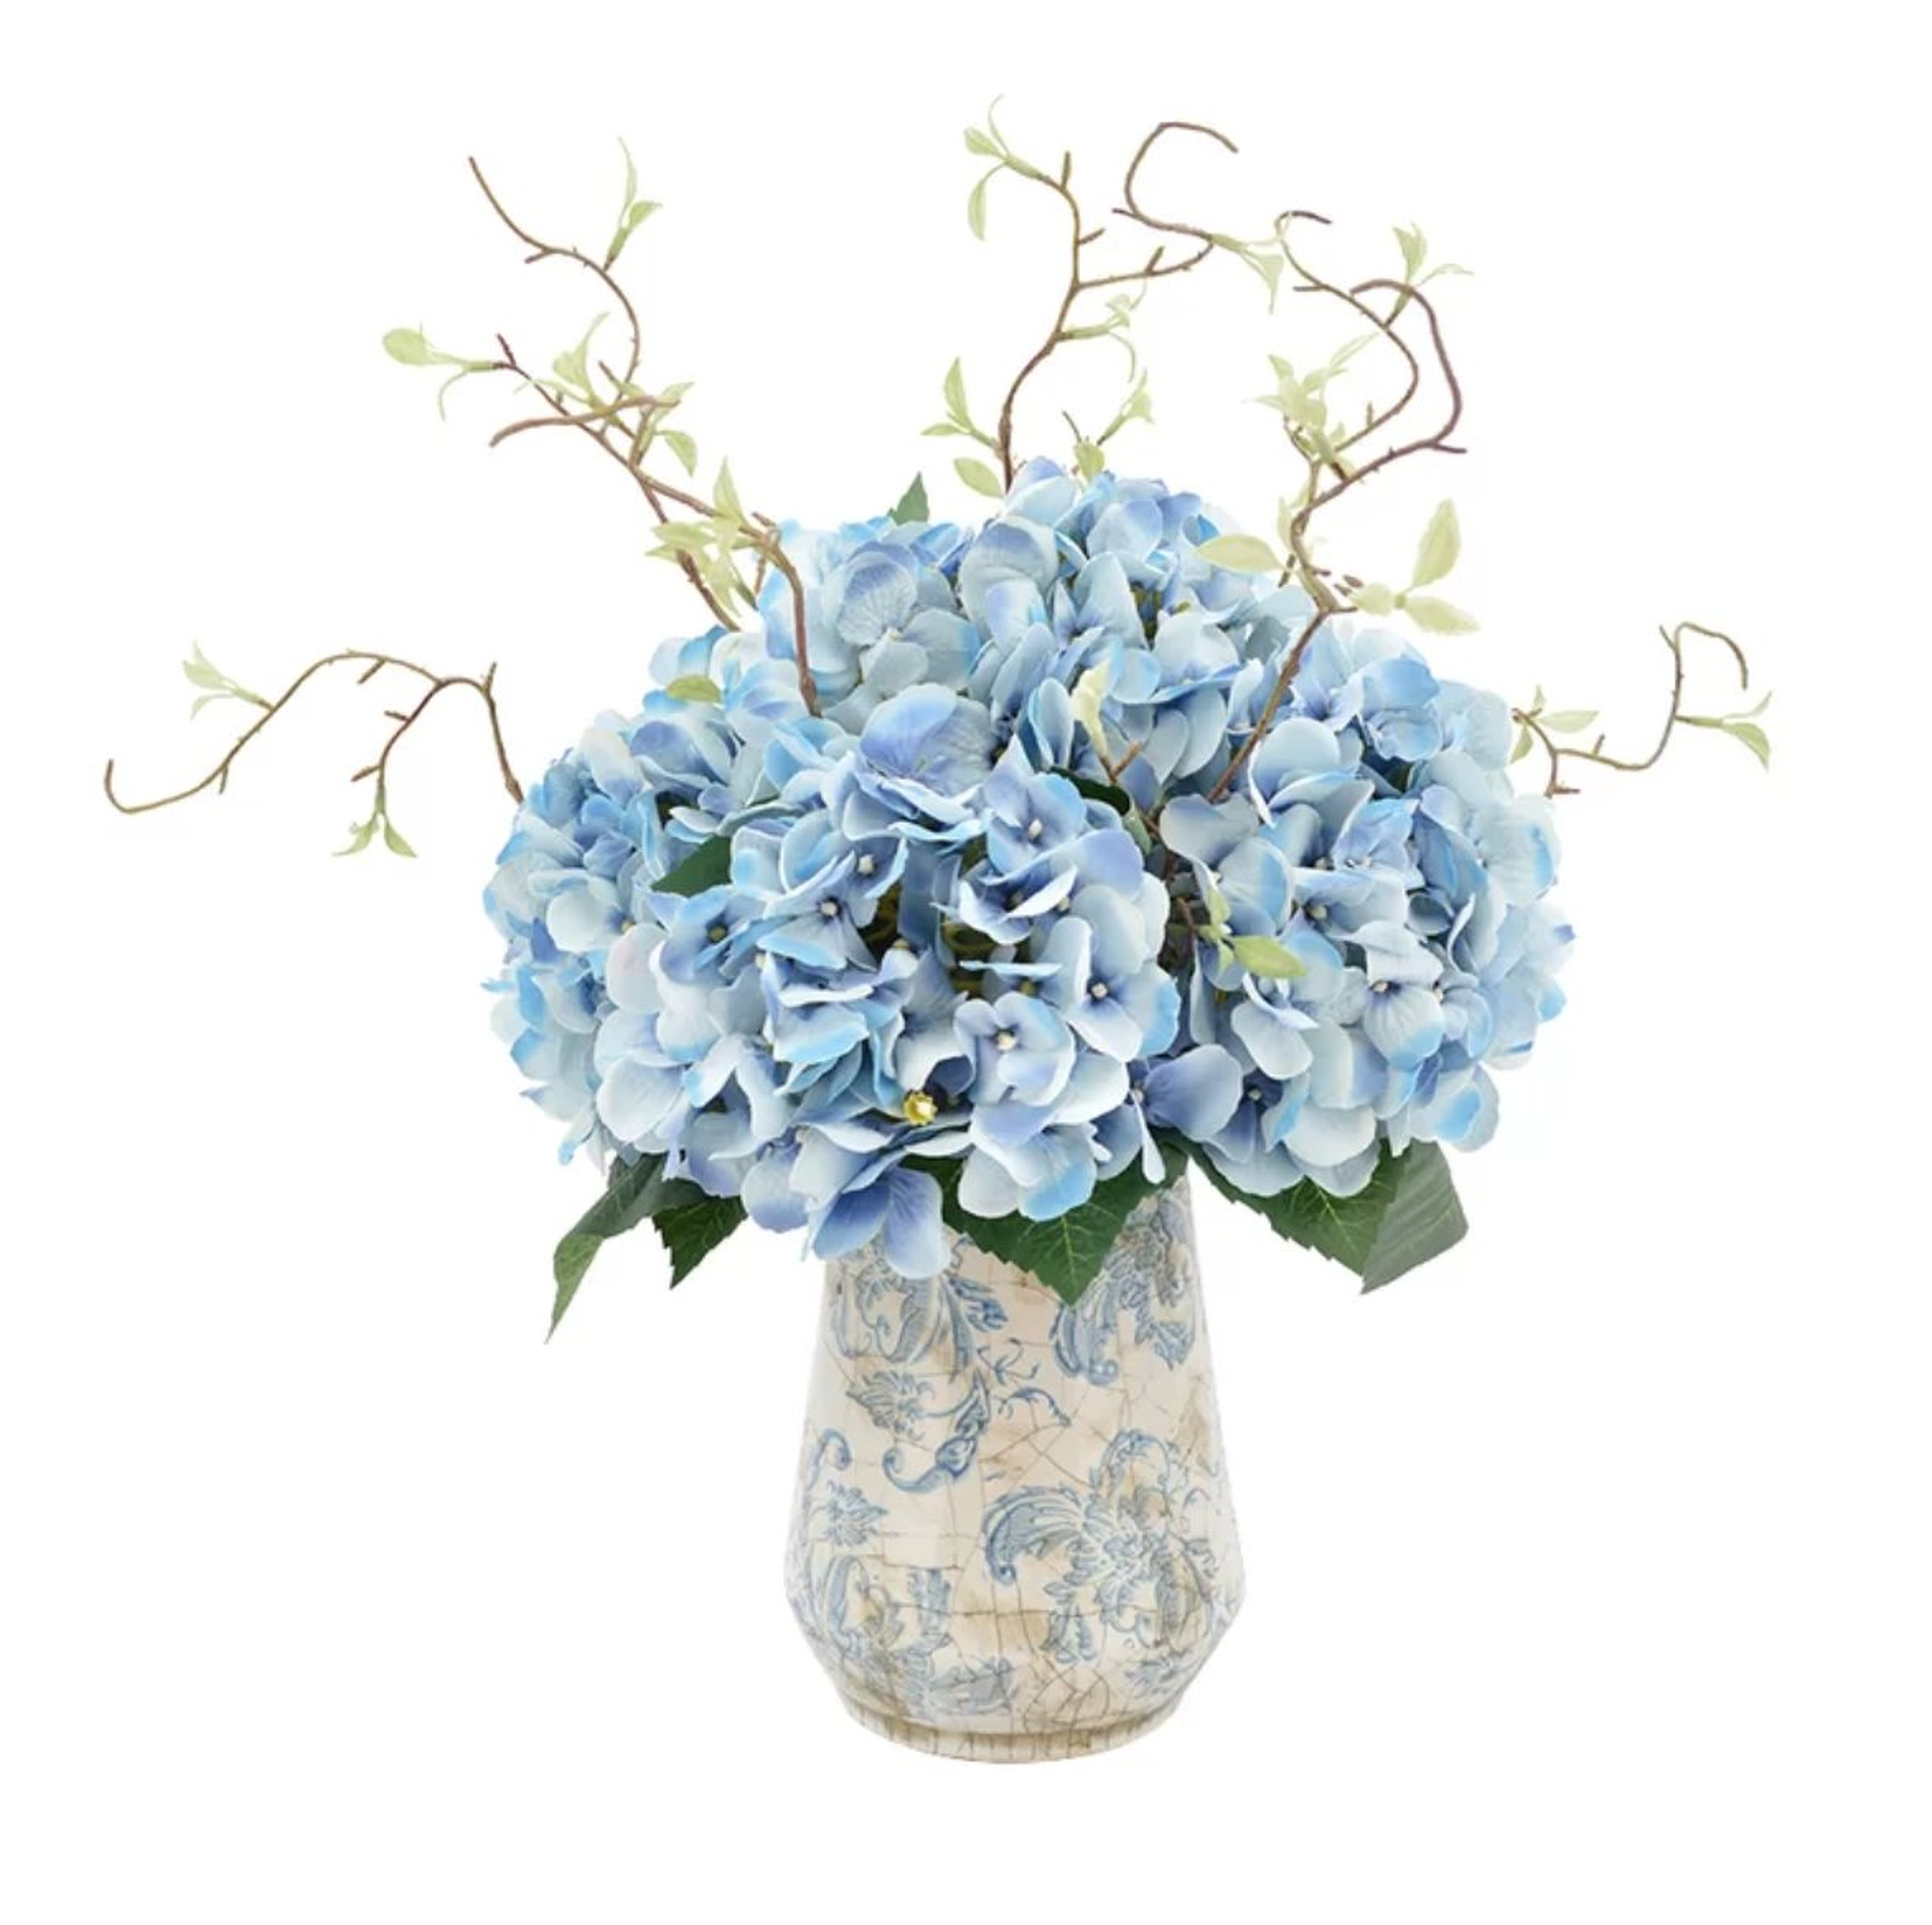 Hydrangea Floral Arrangements with Vines in Rustic Vase - Wayfair